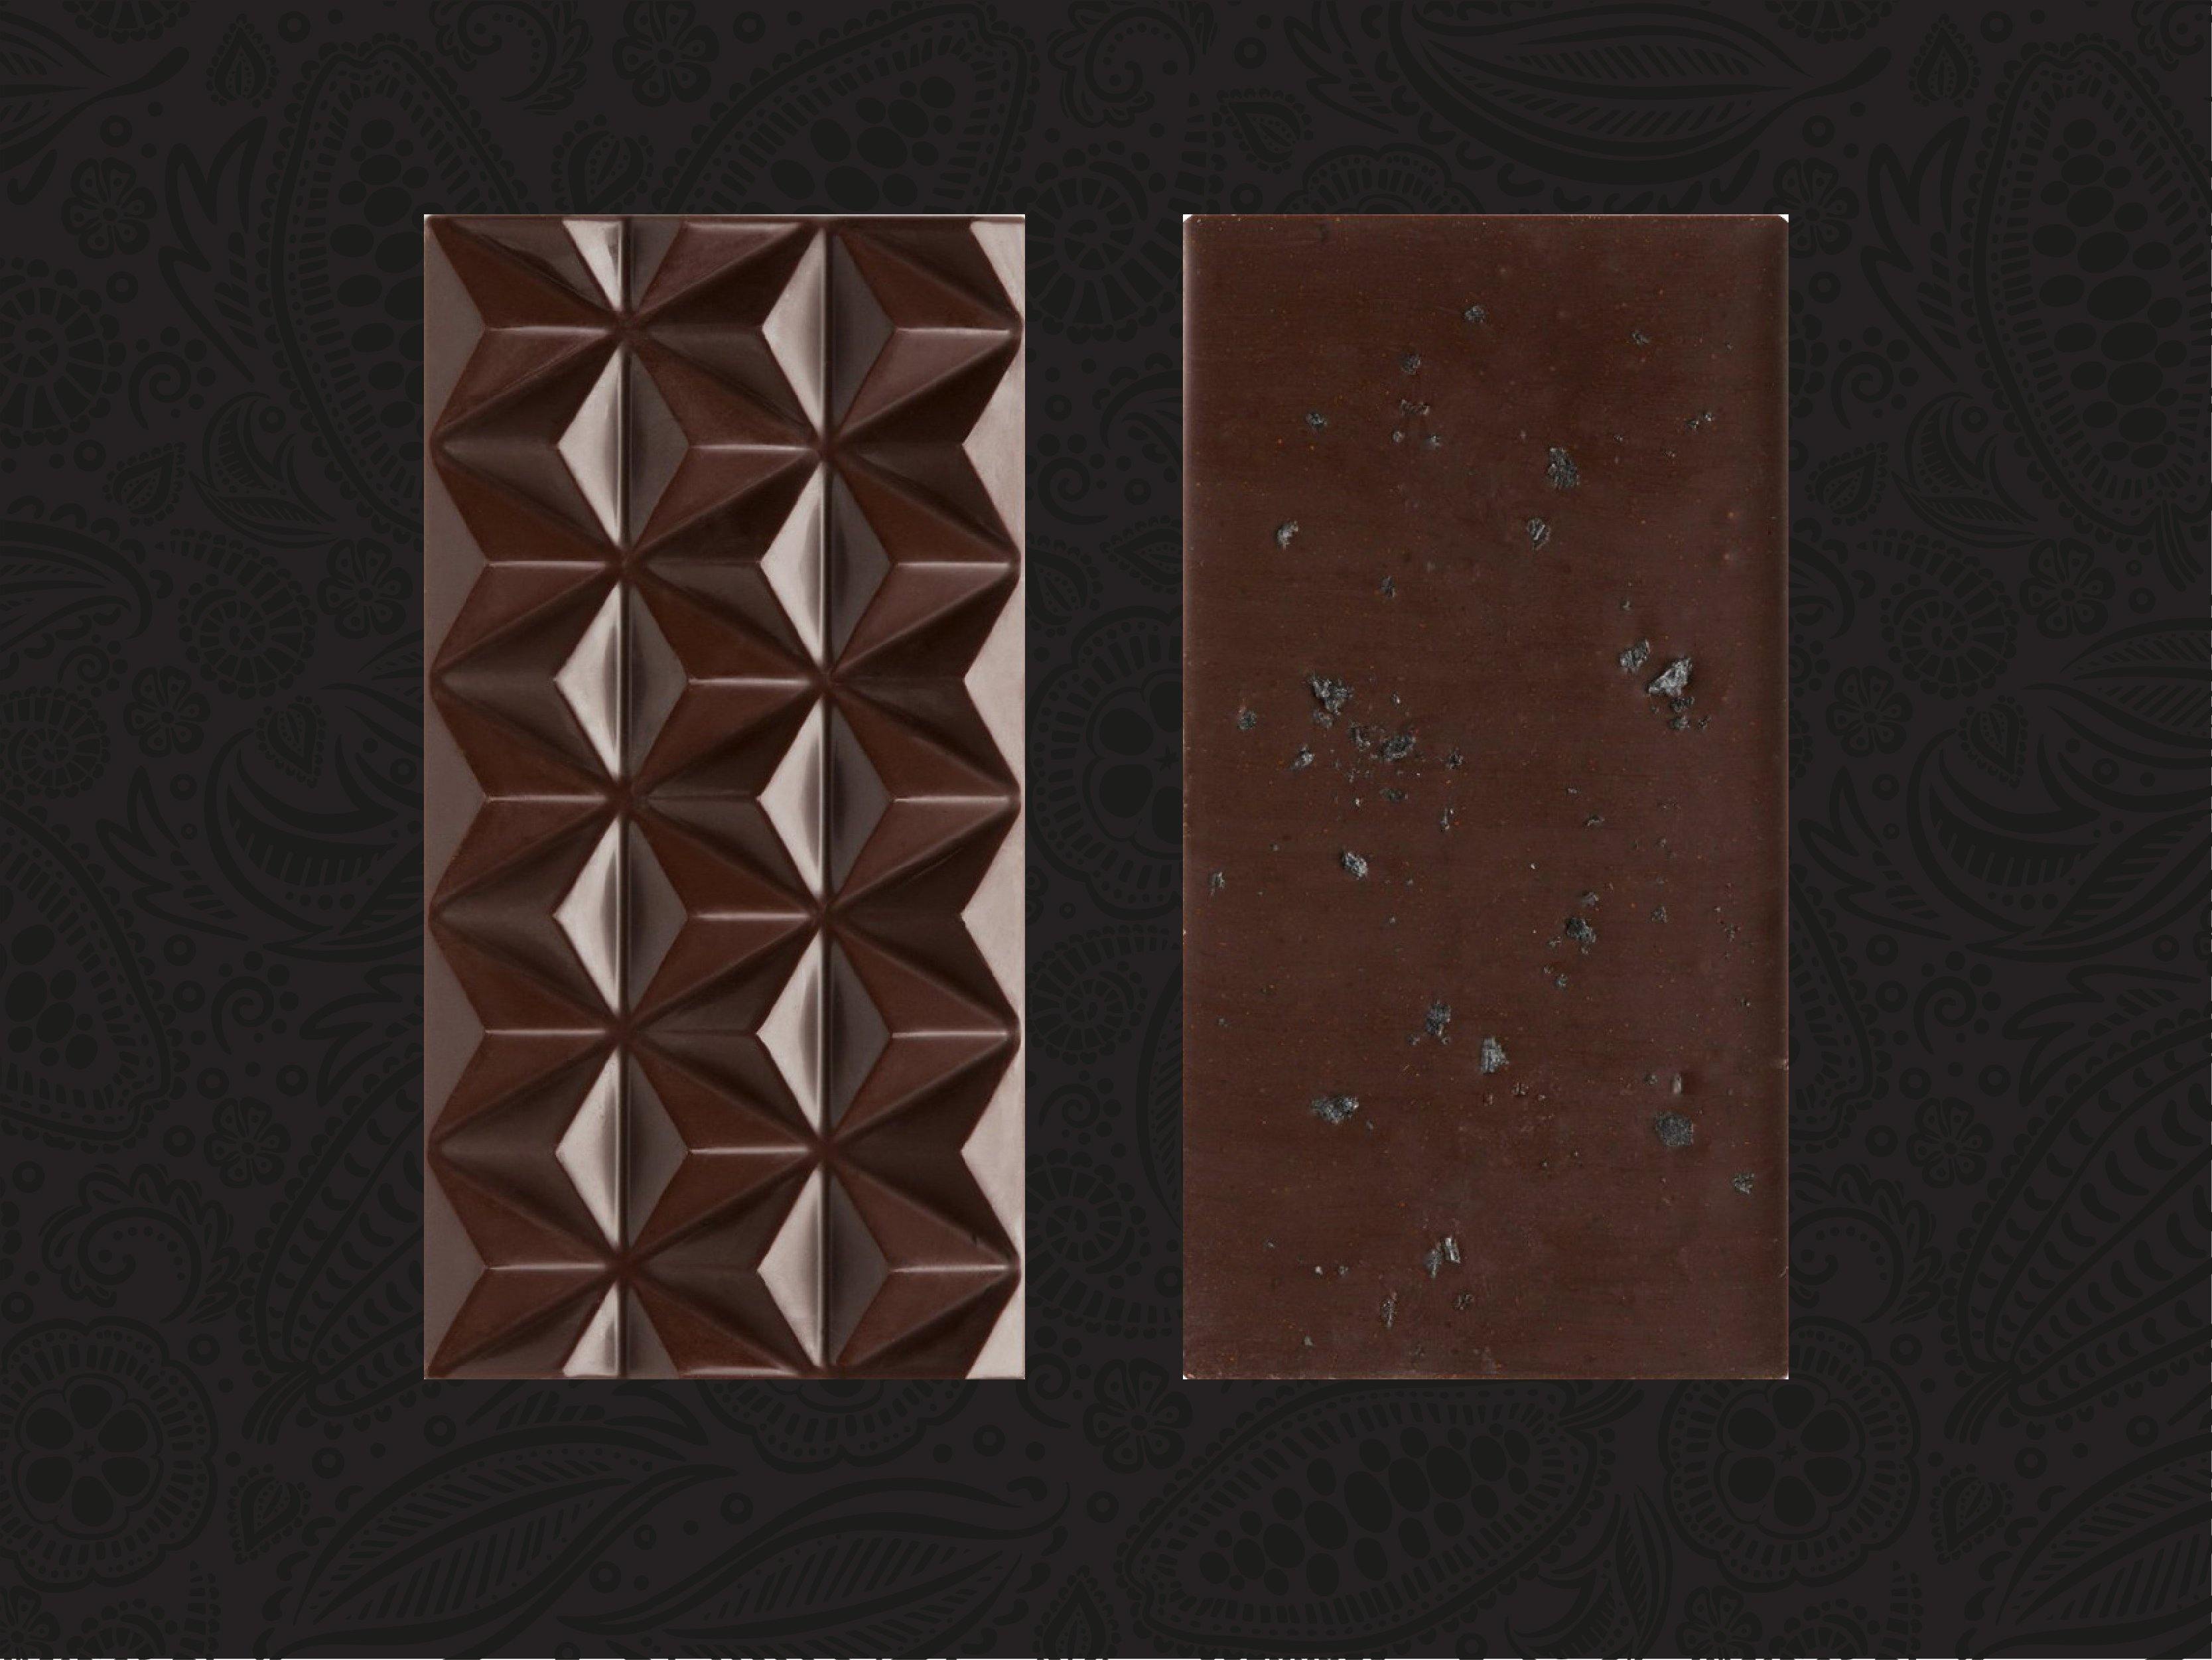 La Brioche Dark Chocolate - La Brioche